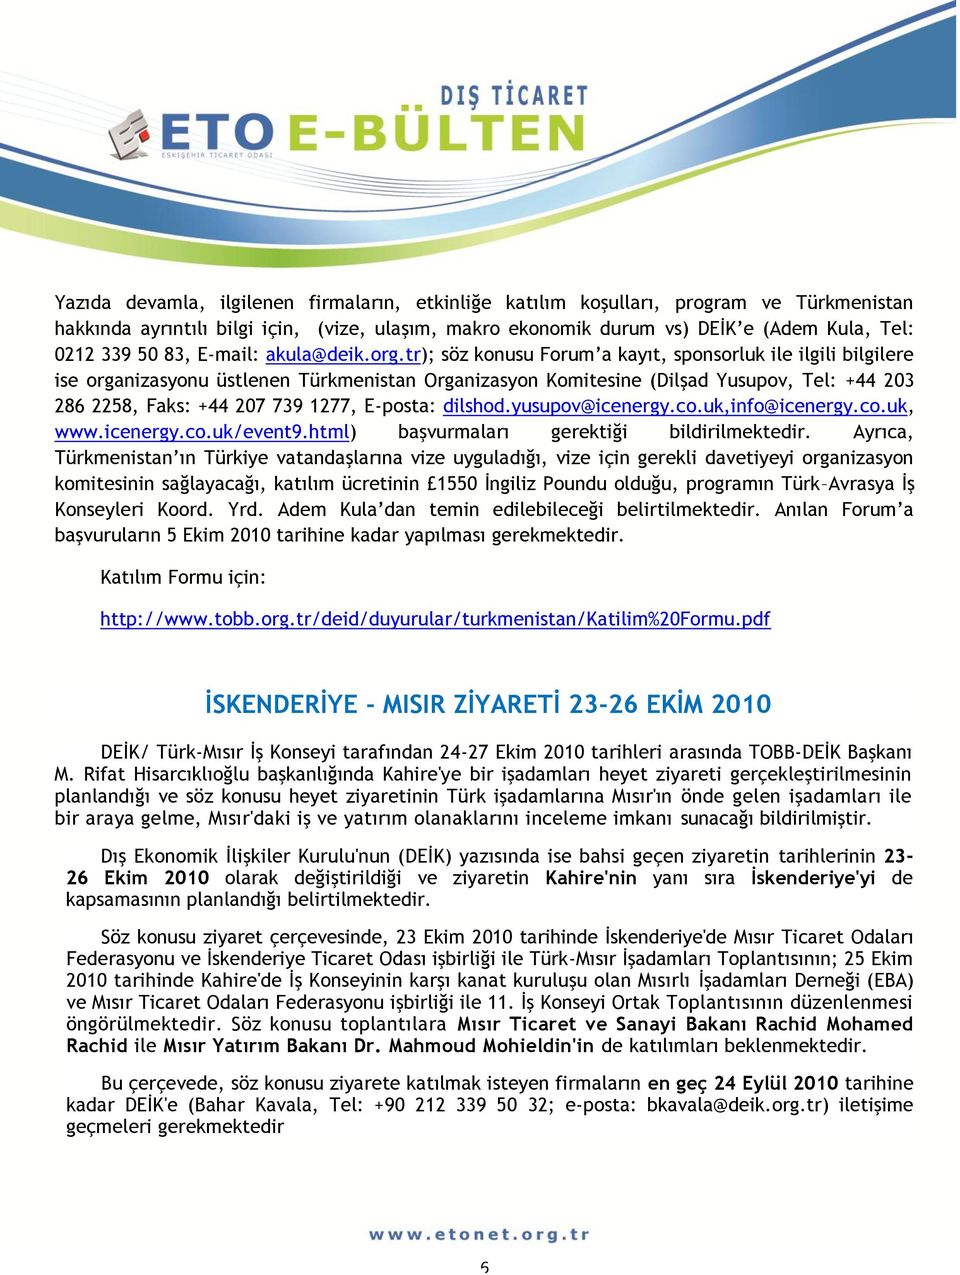 tr); söz konusu Forum a kayıt, sponsorluk ile ilgili bilgilere ise organizasyonu üstlenen Türkmenistan Organizasyon Komitesine (Dilşad Yusupov, Tel: +44 203 286 2258, Faks: +44 207 739 1277, E-posta: